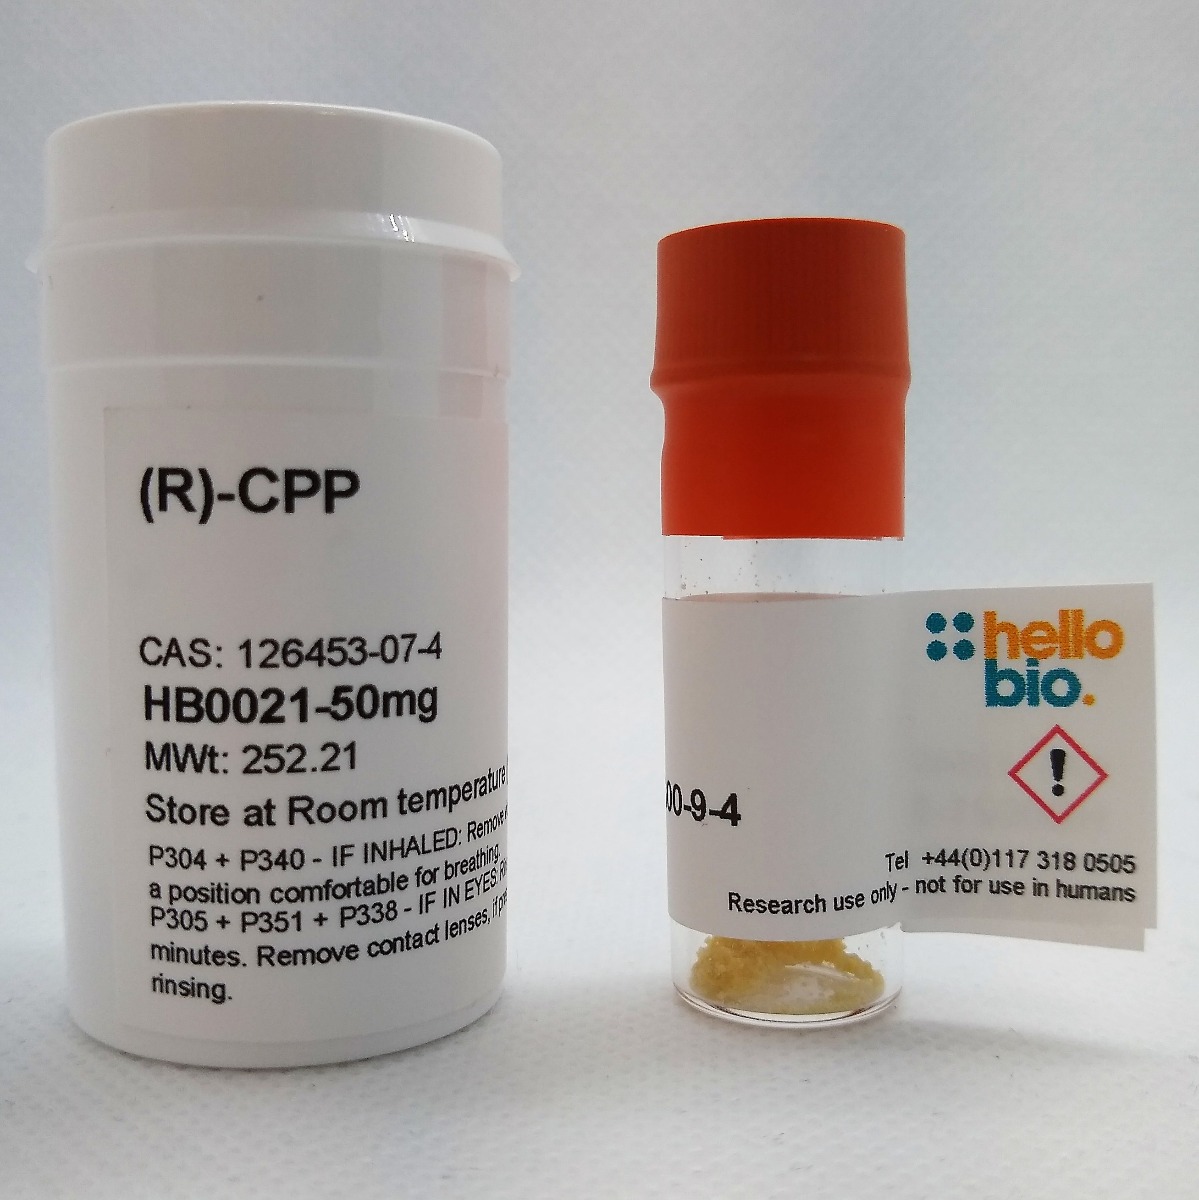 (R)-CPP product vial image | Hello Bio